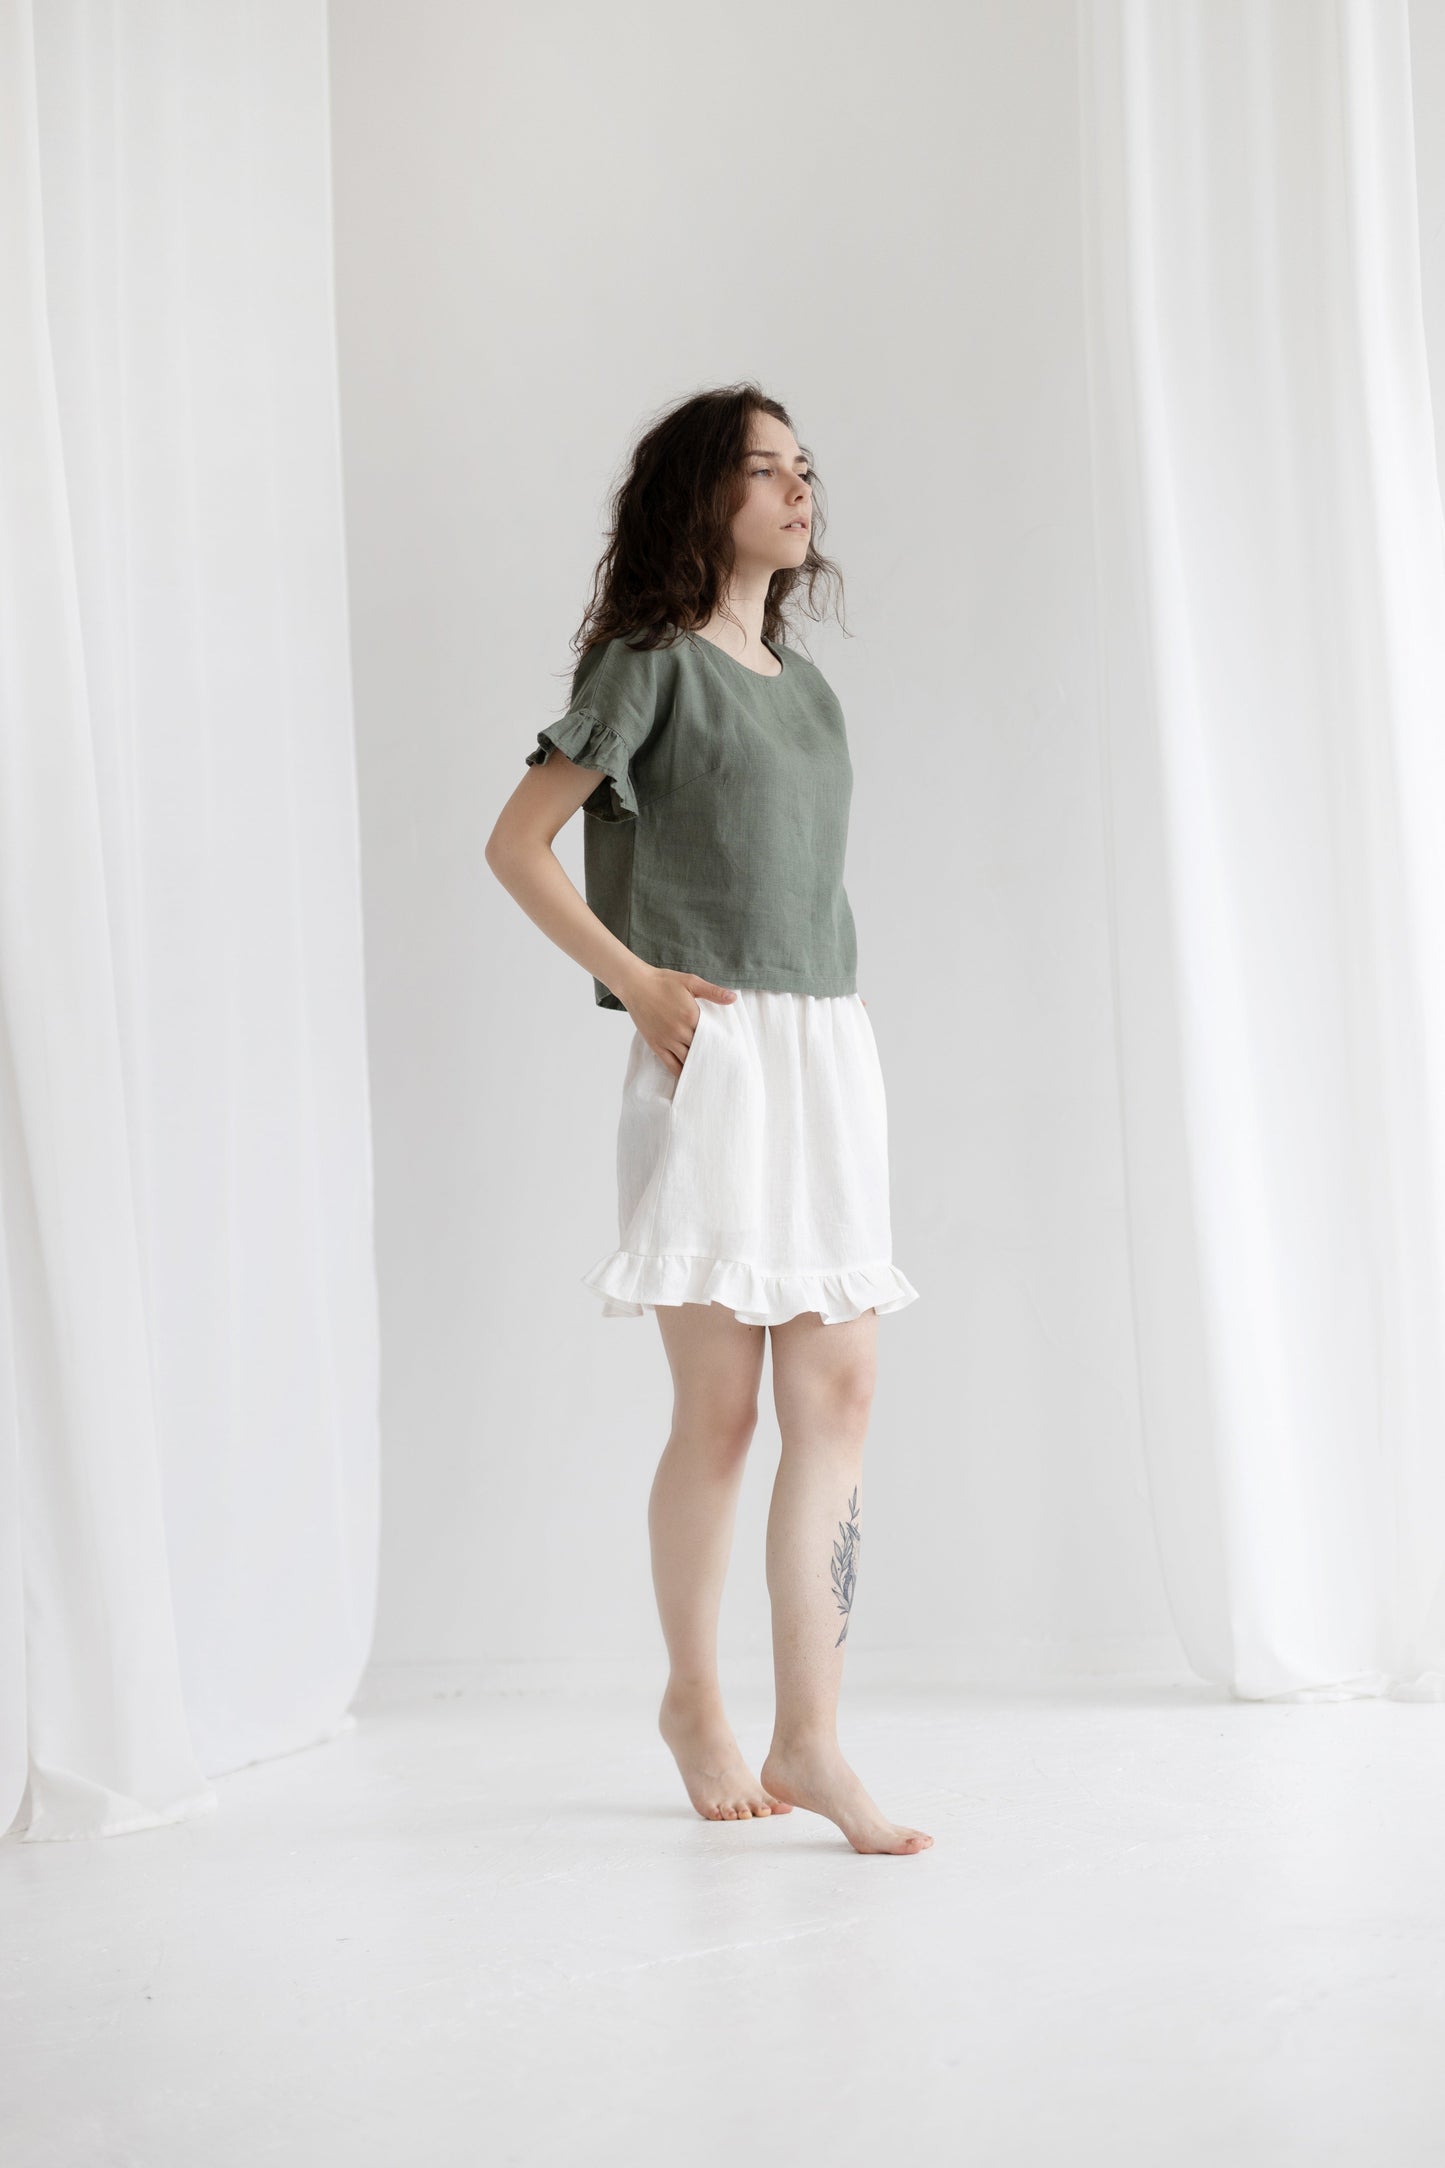 Linen Skirt RUFFLES, Milky white, XS/S size